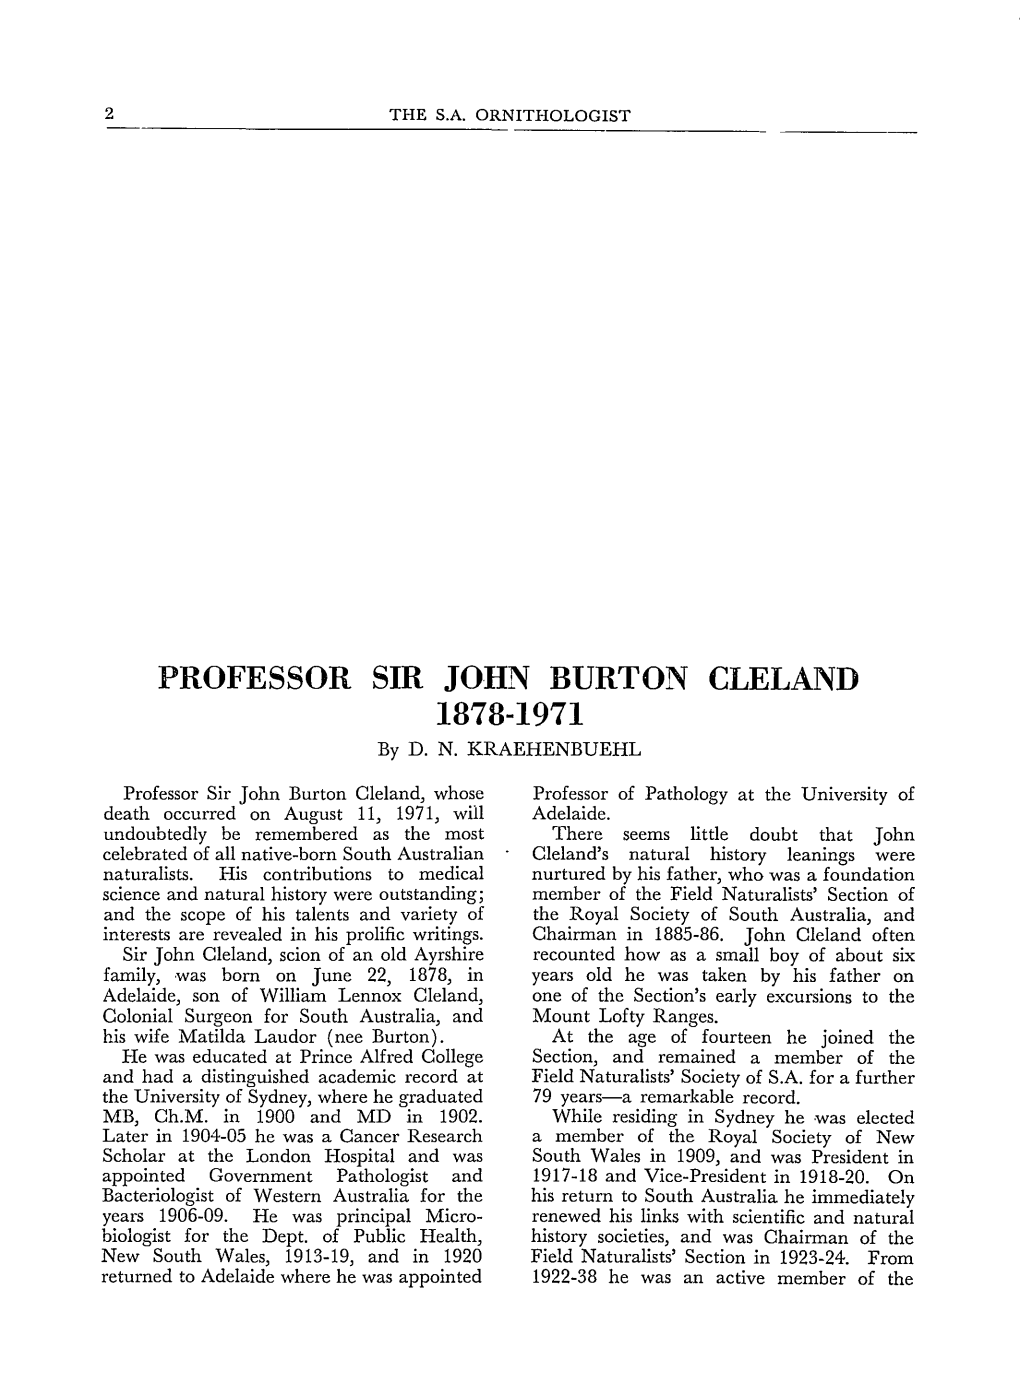 PROFESSOR SIR JOHN BURTON CLELAND 1878-1971 Byd